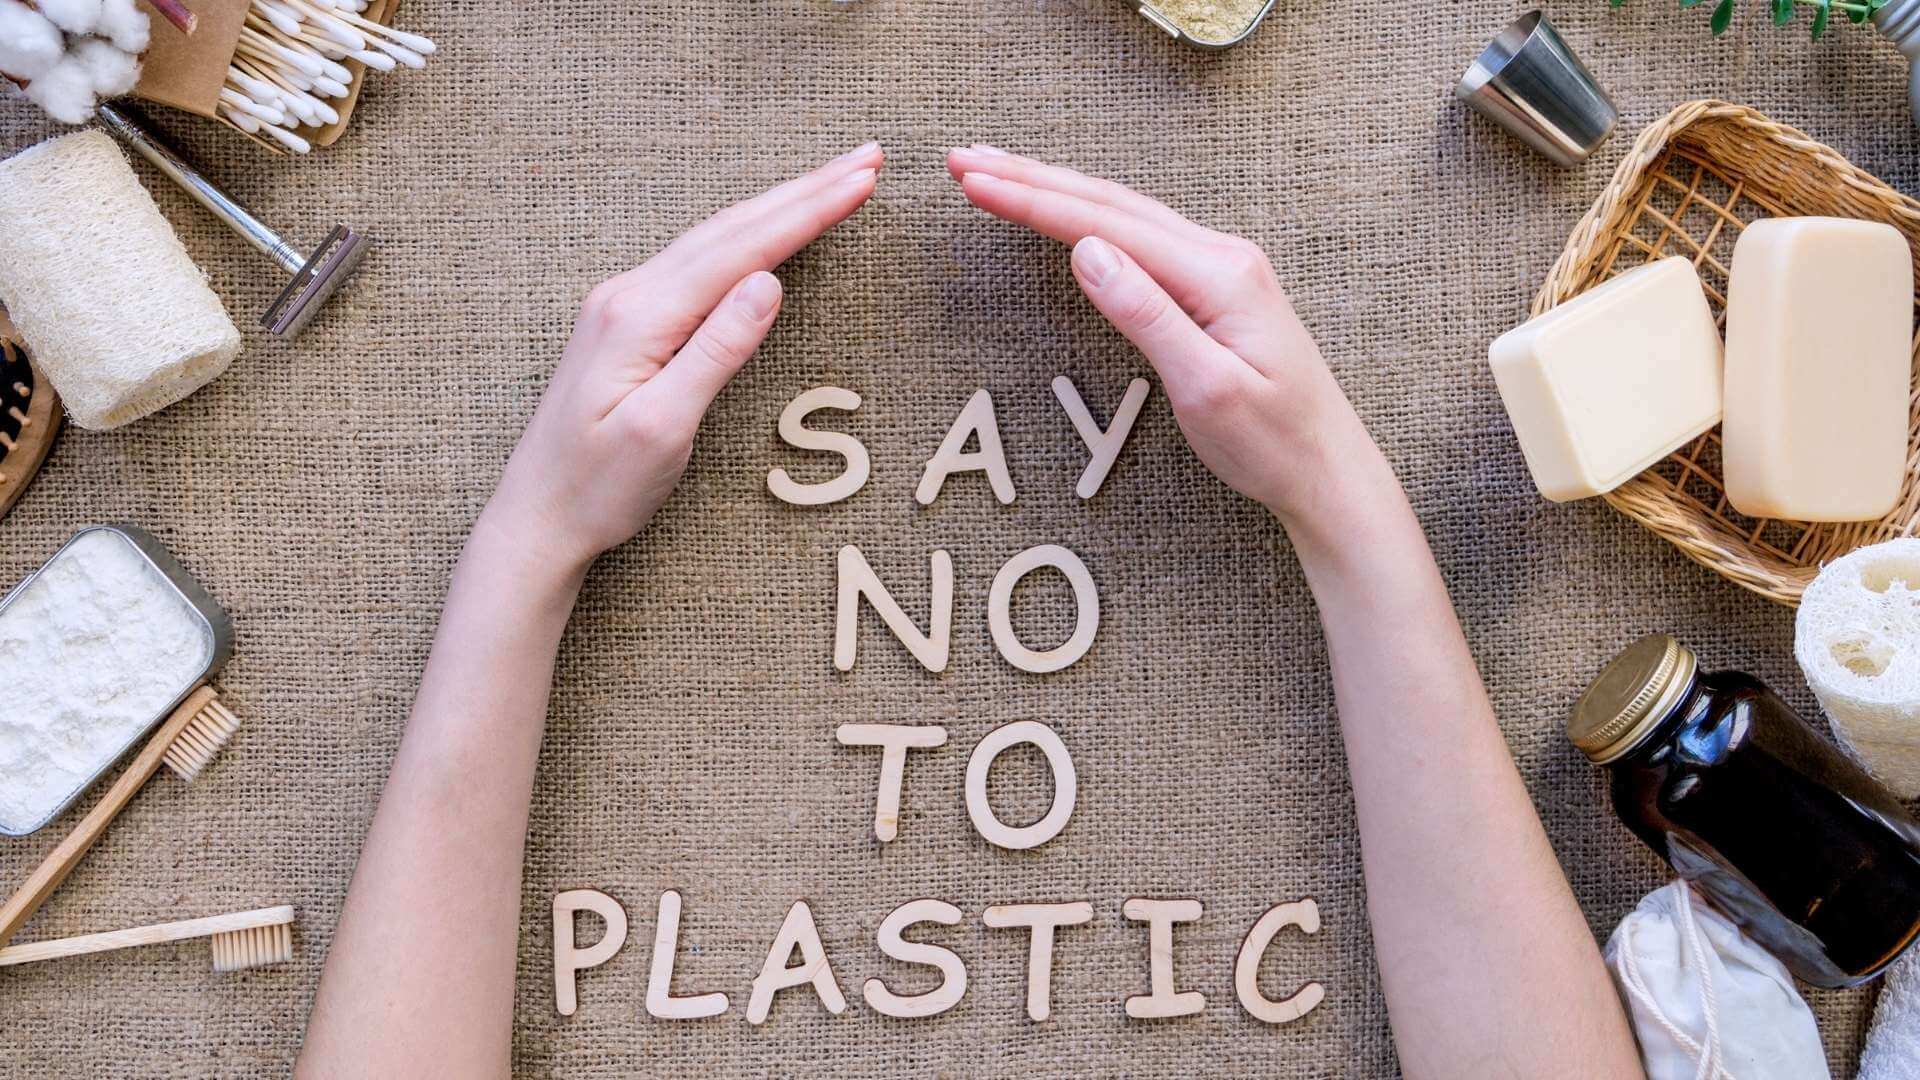 Avoid Plastics in everyday life